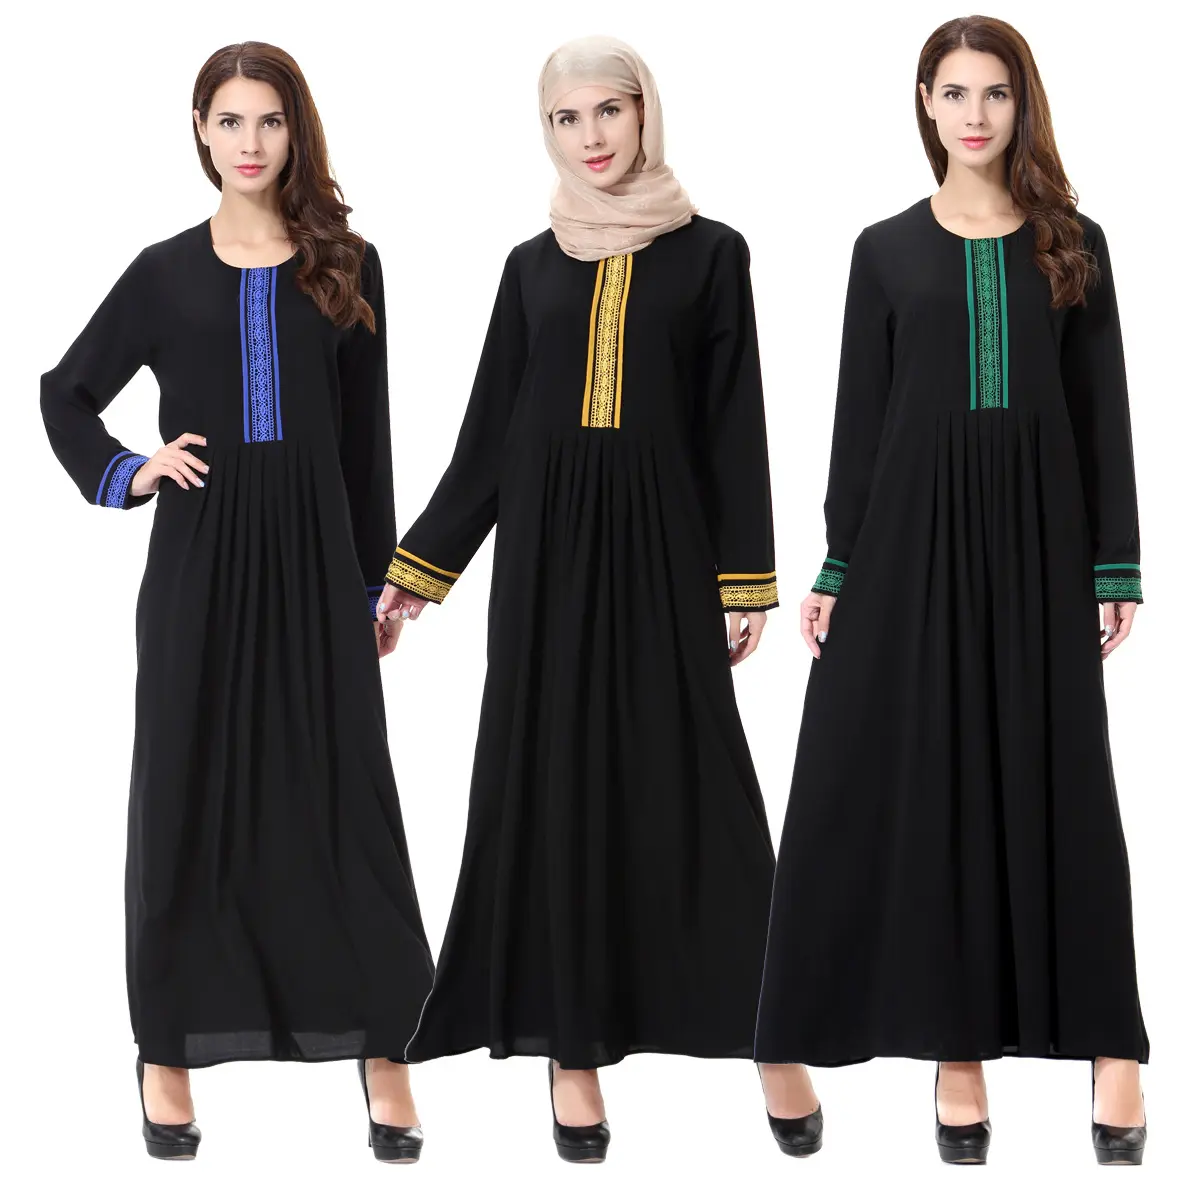 Musulmán de Oriente Medio de lujo de alta calidad ligero y transpirable vestido de mujer nuevo diseño Venta caliente vestido largo túnica turca abaya